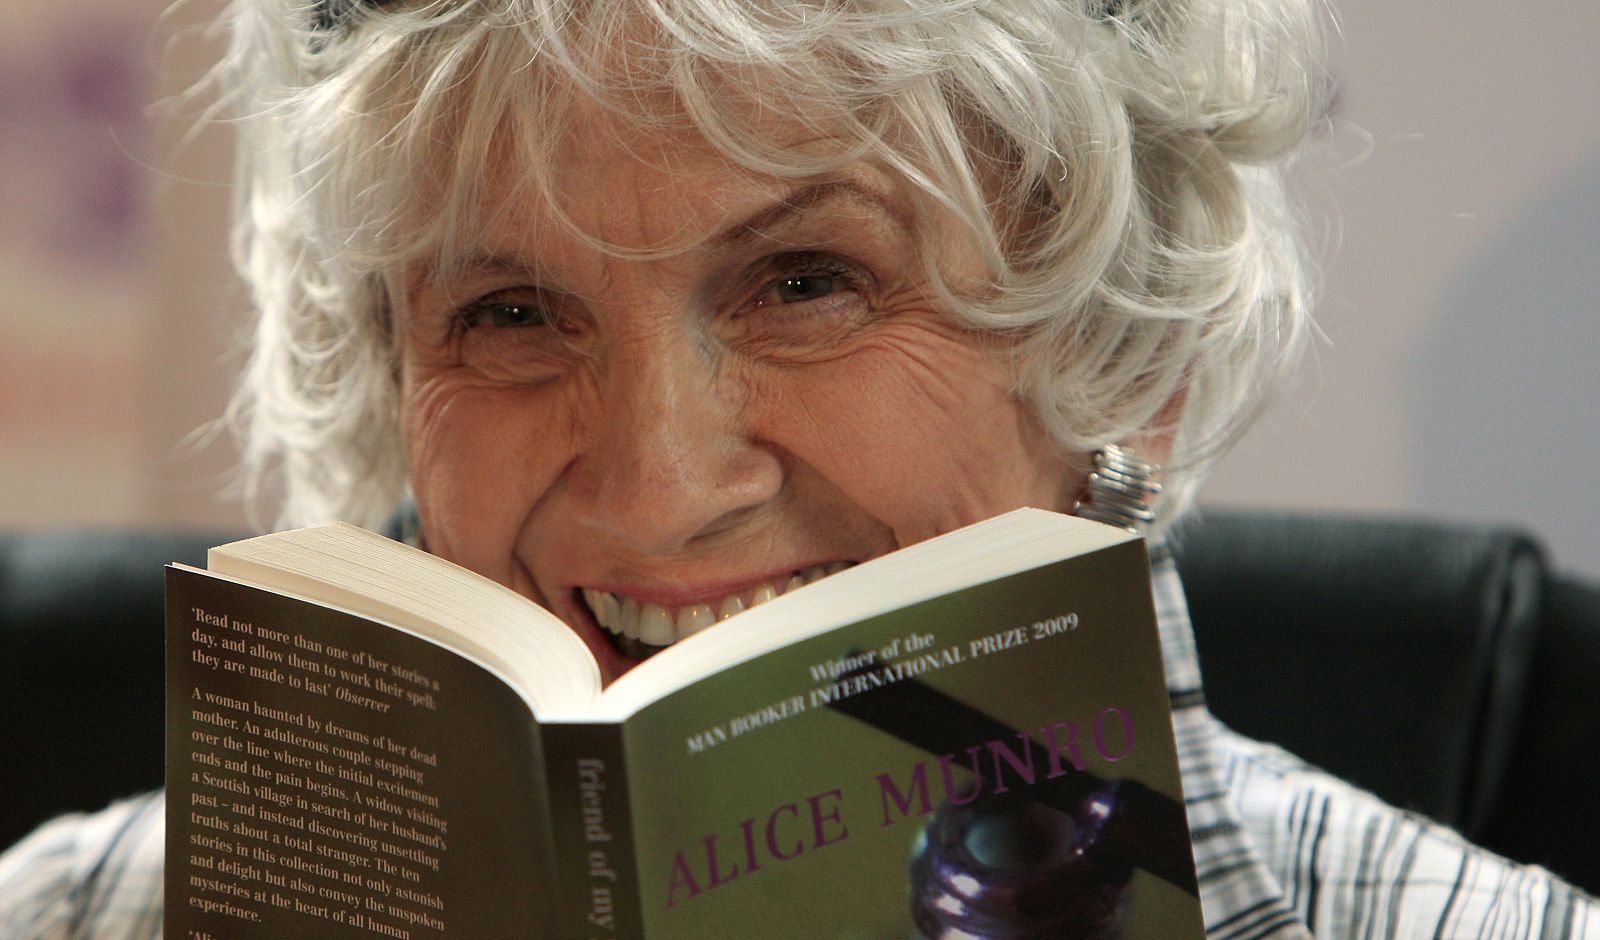 Alice Munro, ganadora del Nobel de Literatura 2013, está considerada como una "maestra del relato corto". La imagen es del 25 de junio de 2009, datada en Dublín.